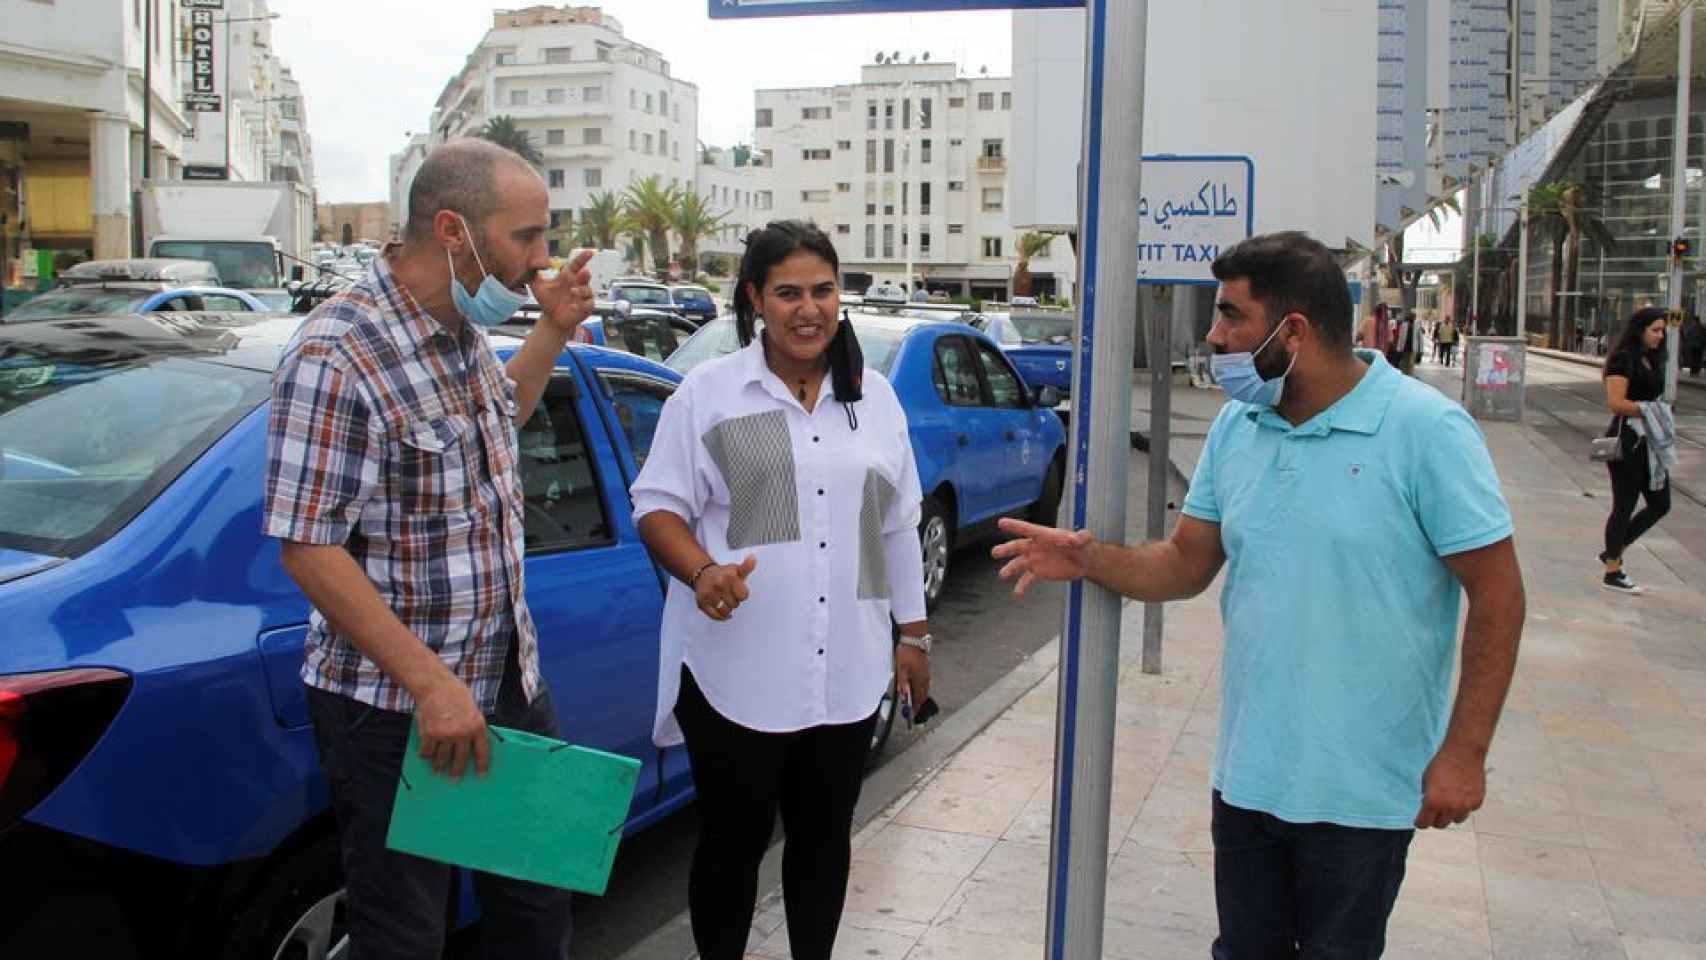 La taxista hablando con sus compañeros de trabajo en Rabat.